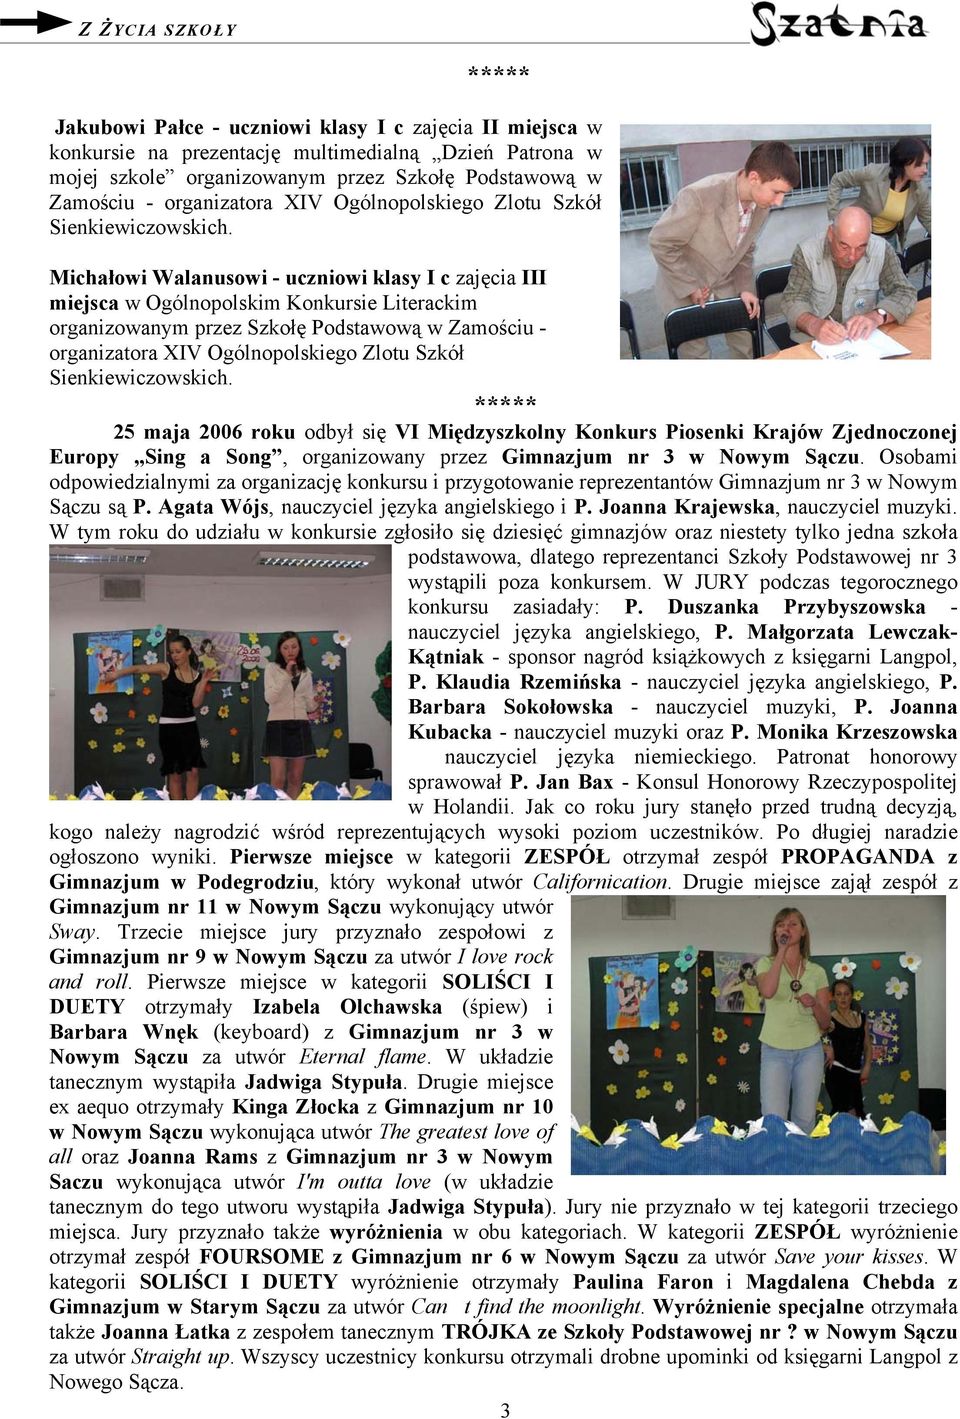 Michałowi Walanusowi - uczniowi klasy I c zajęcia III miejsca w Ogólnopolskim Konkursie Literackim organizowanym przez Szkołę Podstawową w Zamościu -  25 maja 2006 roku odbył się VI Międzyszkolny